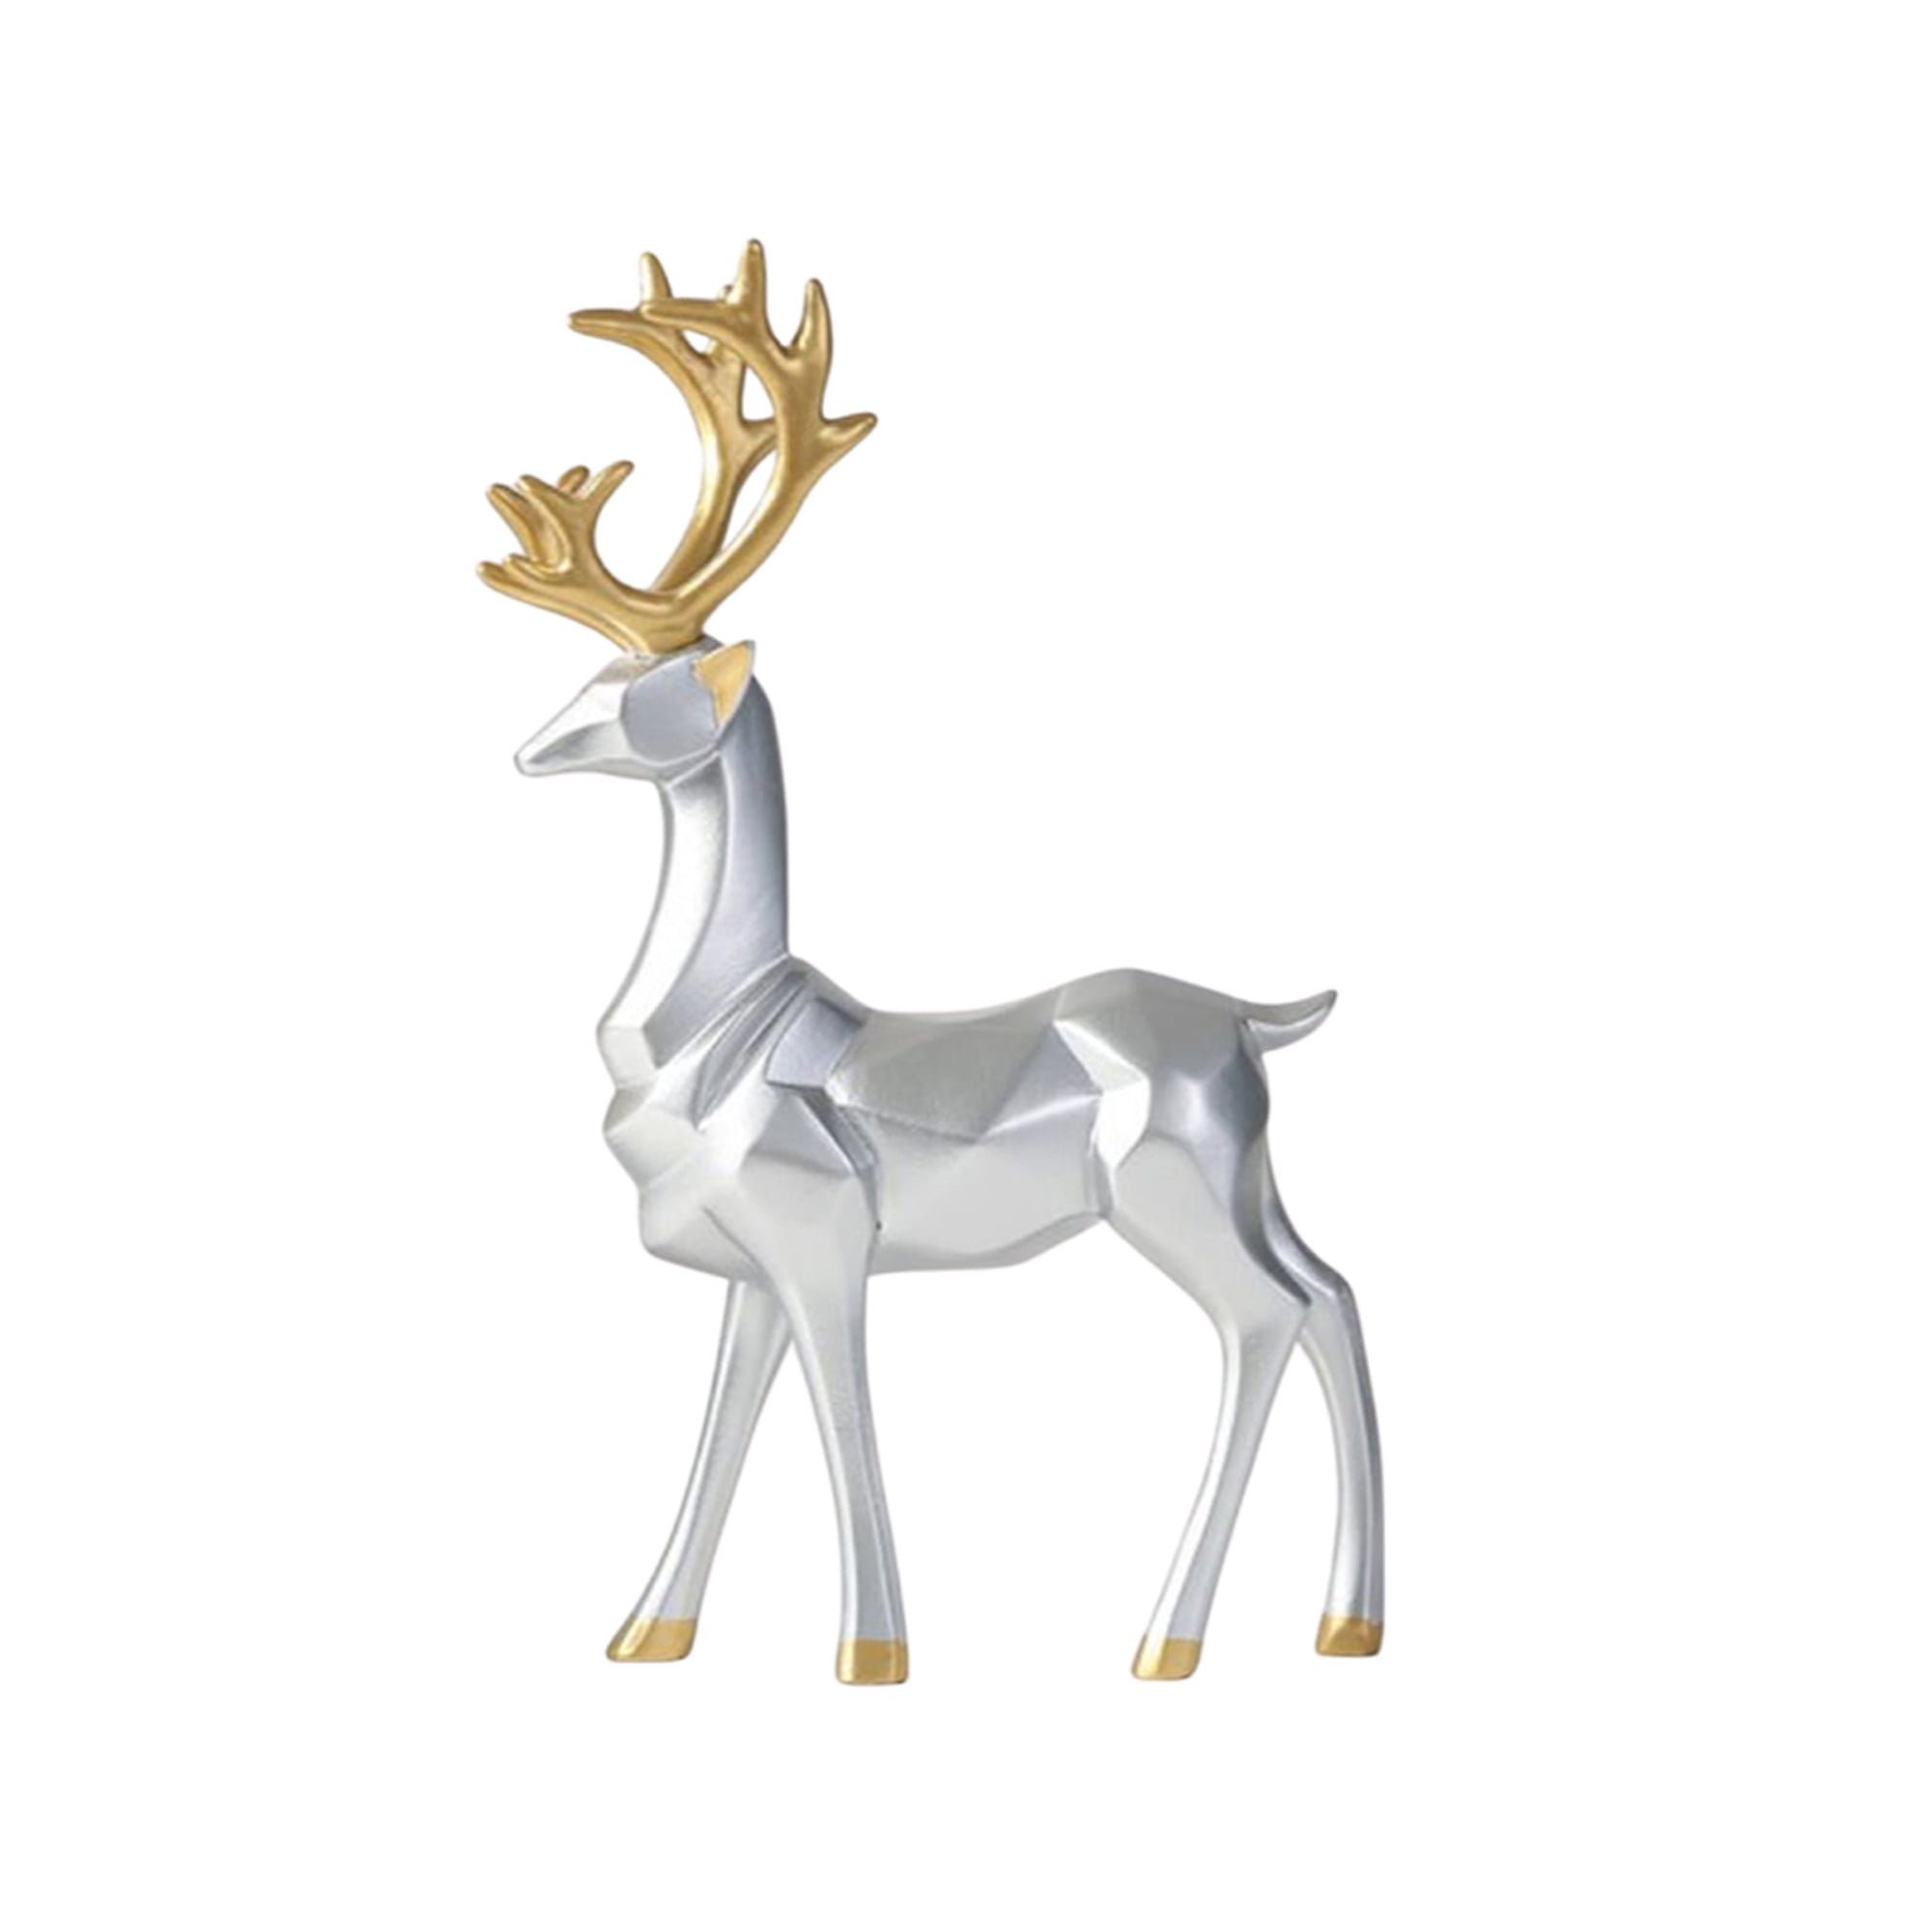 Young's Resin Deer 2 Piece Figurine Set 5